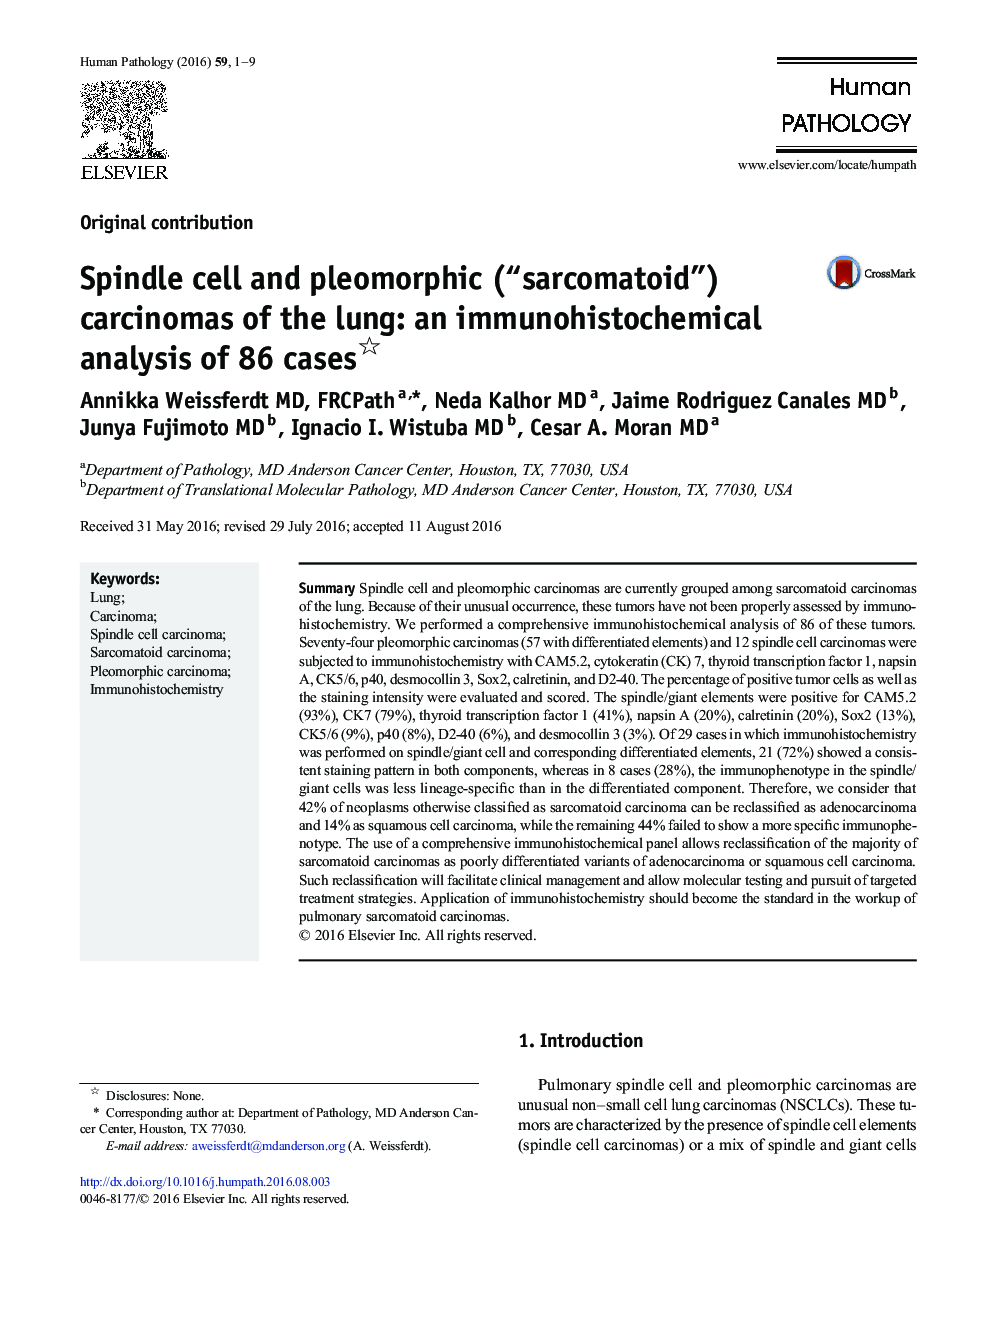 سرطان سلول اسپیندل و پلئومورف ("sarcomatoid") ریه: تجزیه و تحلیل ایمونوهیستوشیمیایی 86 مورد 